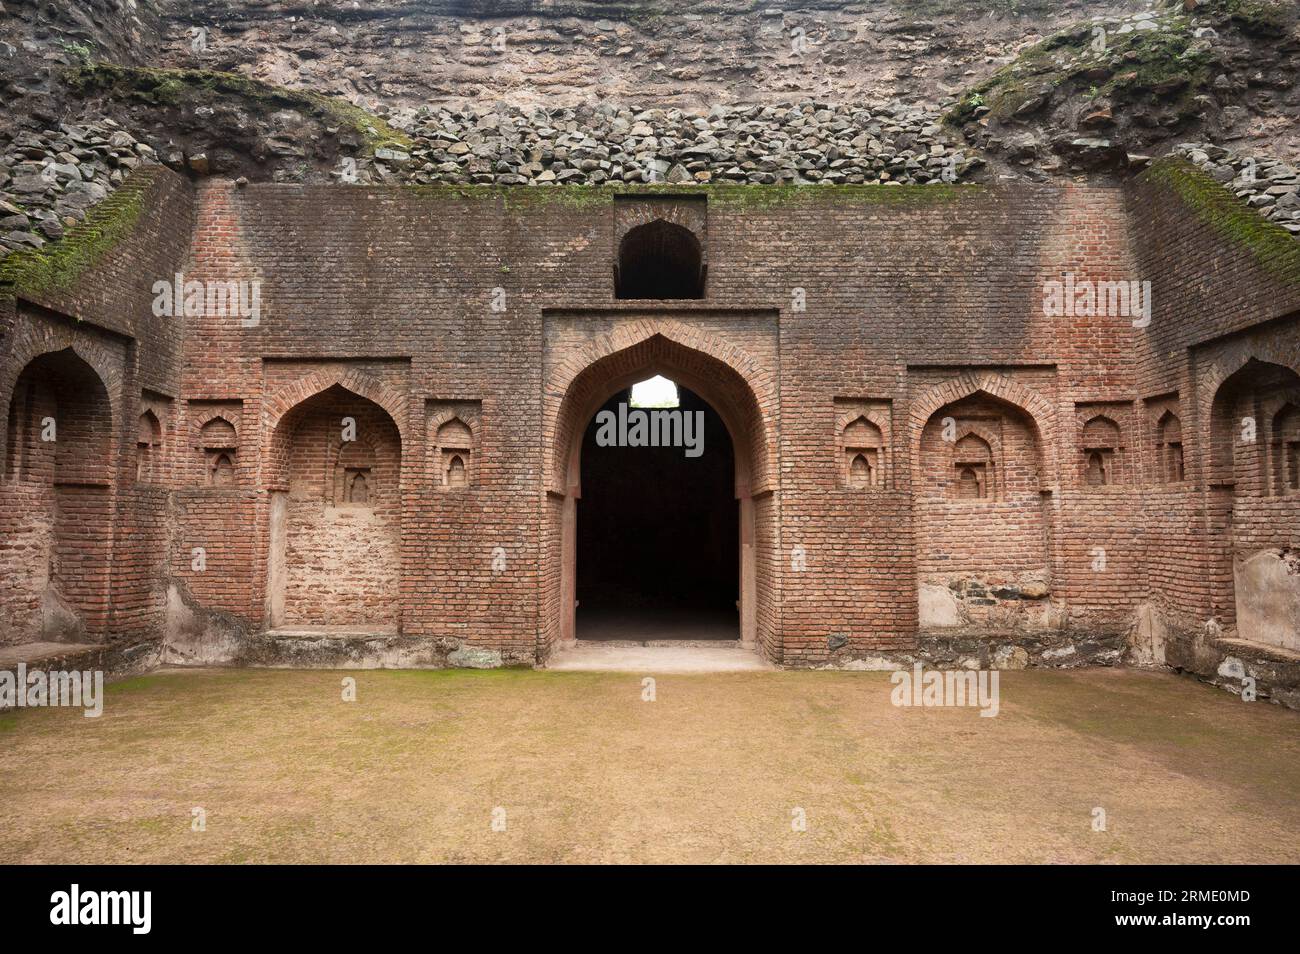 Ruins of Gada Shah's Shop, located in Mandu, Madhya Pradesh, India Stock Photo